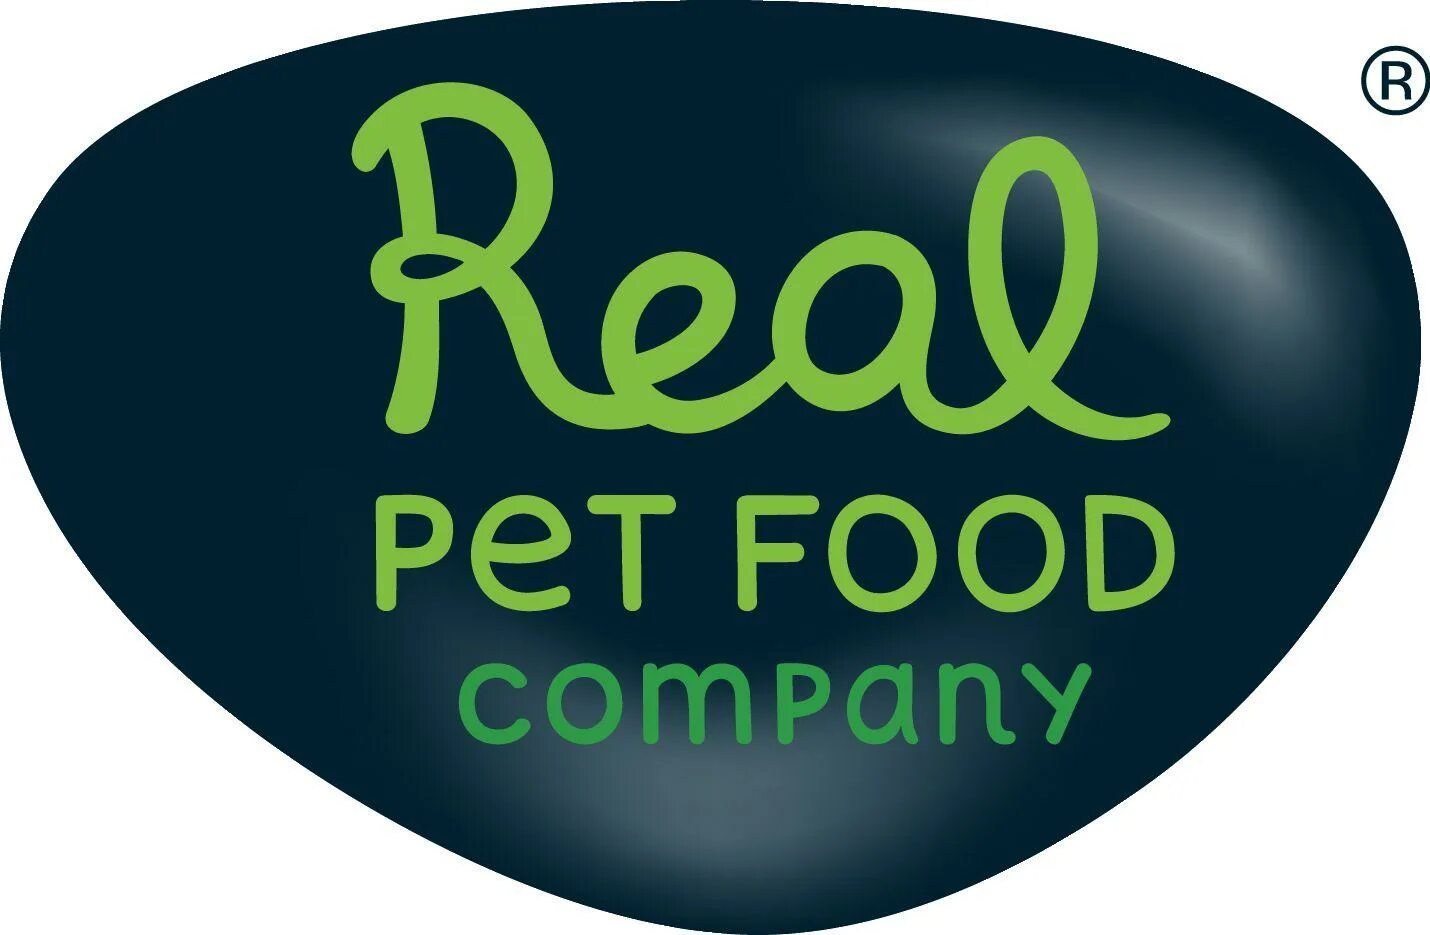 Pets company. Food Company. Pets food Company. Логотип фуд Компани. Логотип еды для собак.